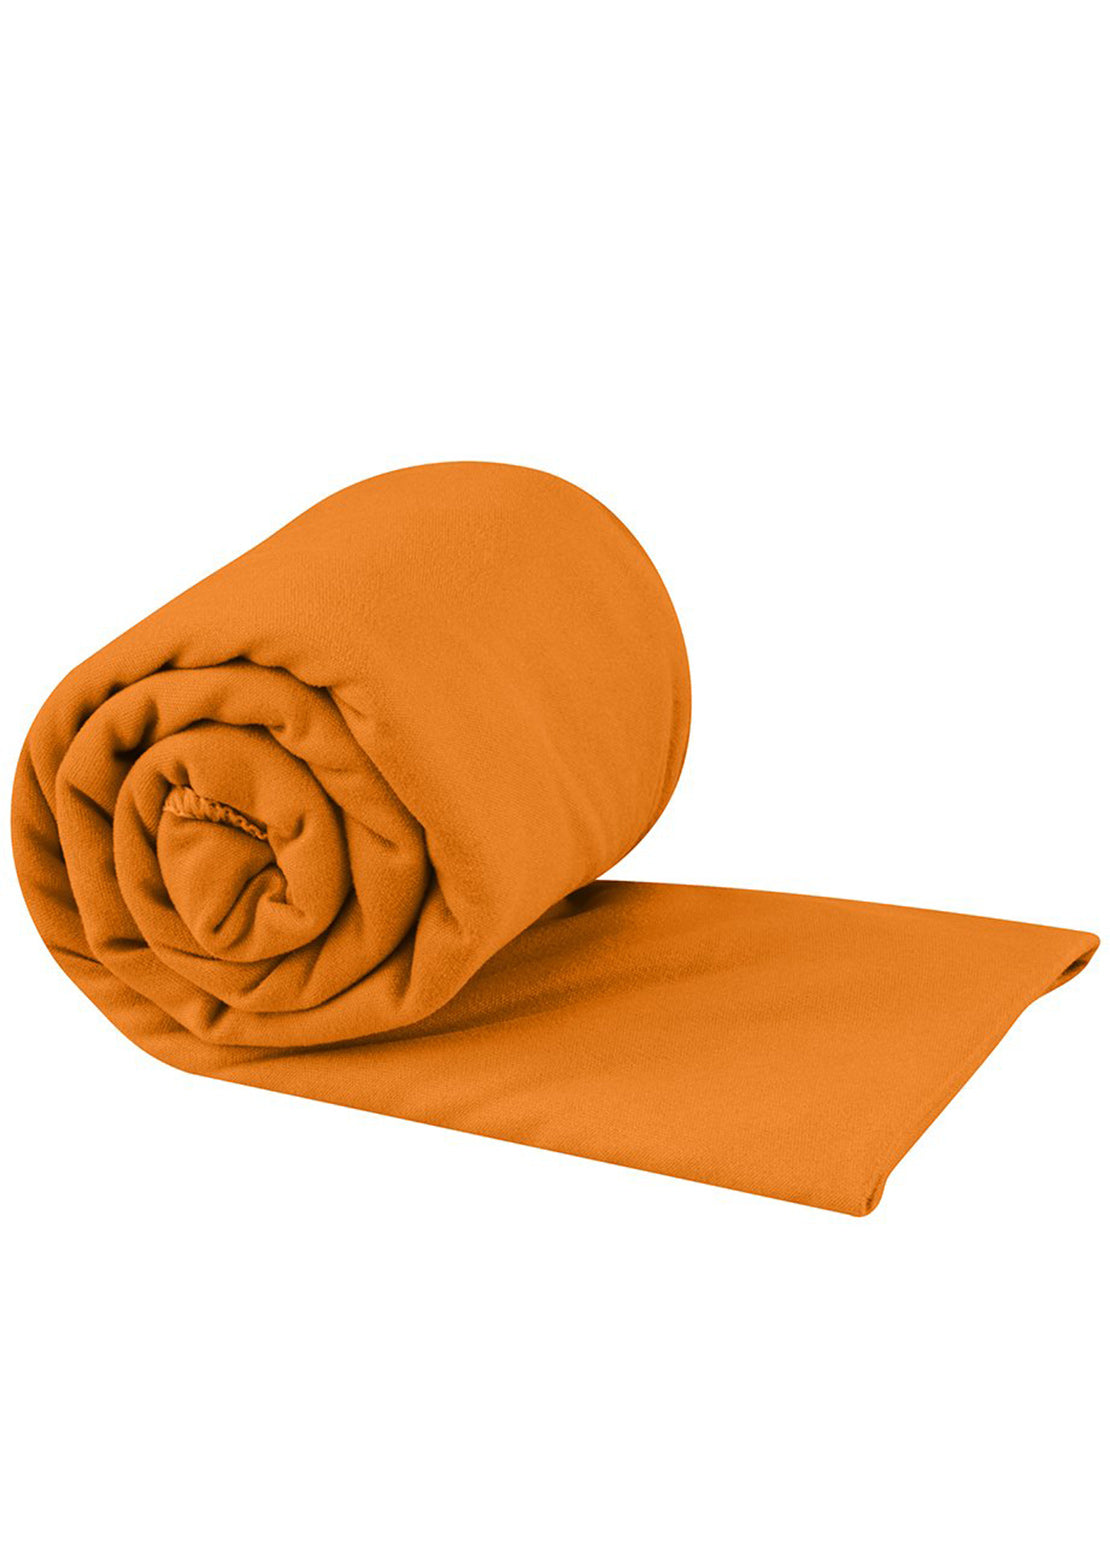 Sea To Summit Pocket Towel - XLarge Orange